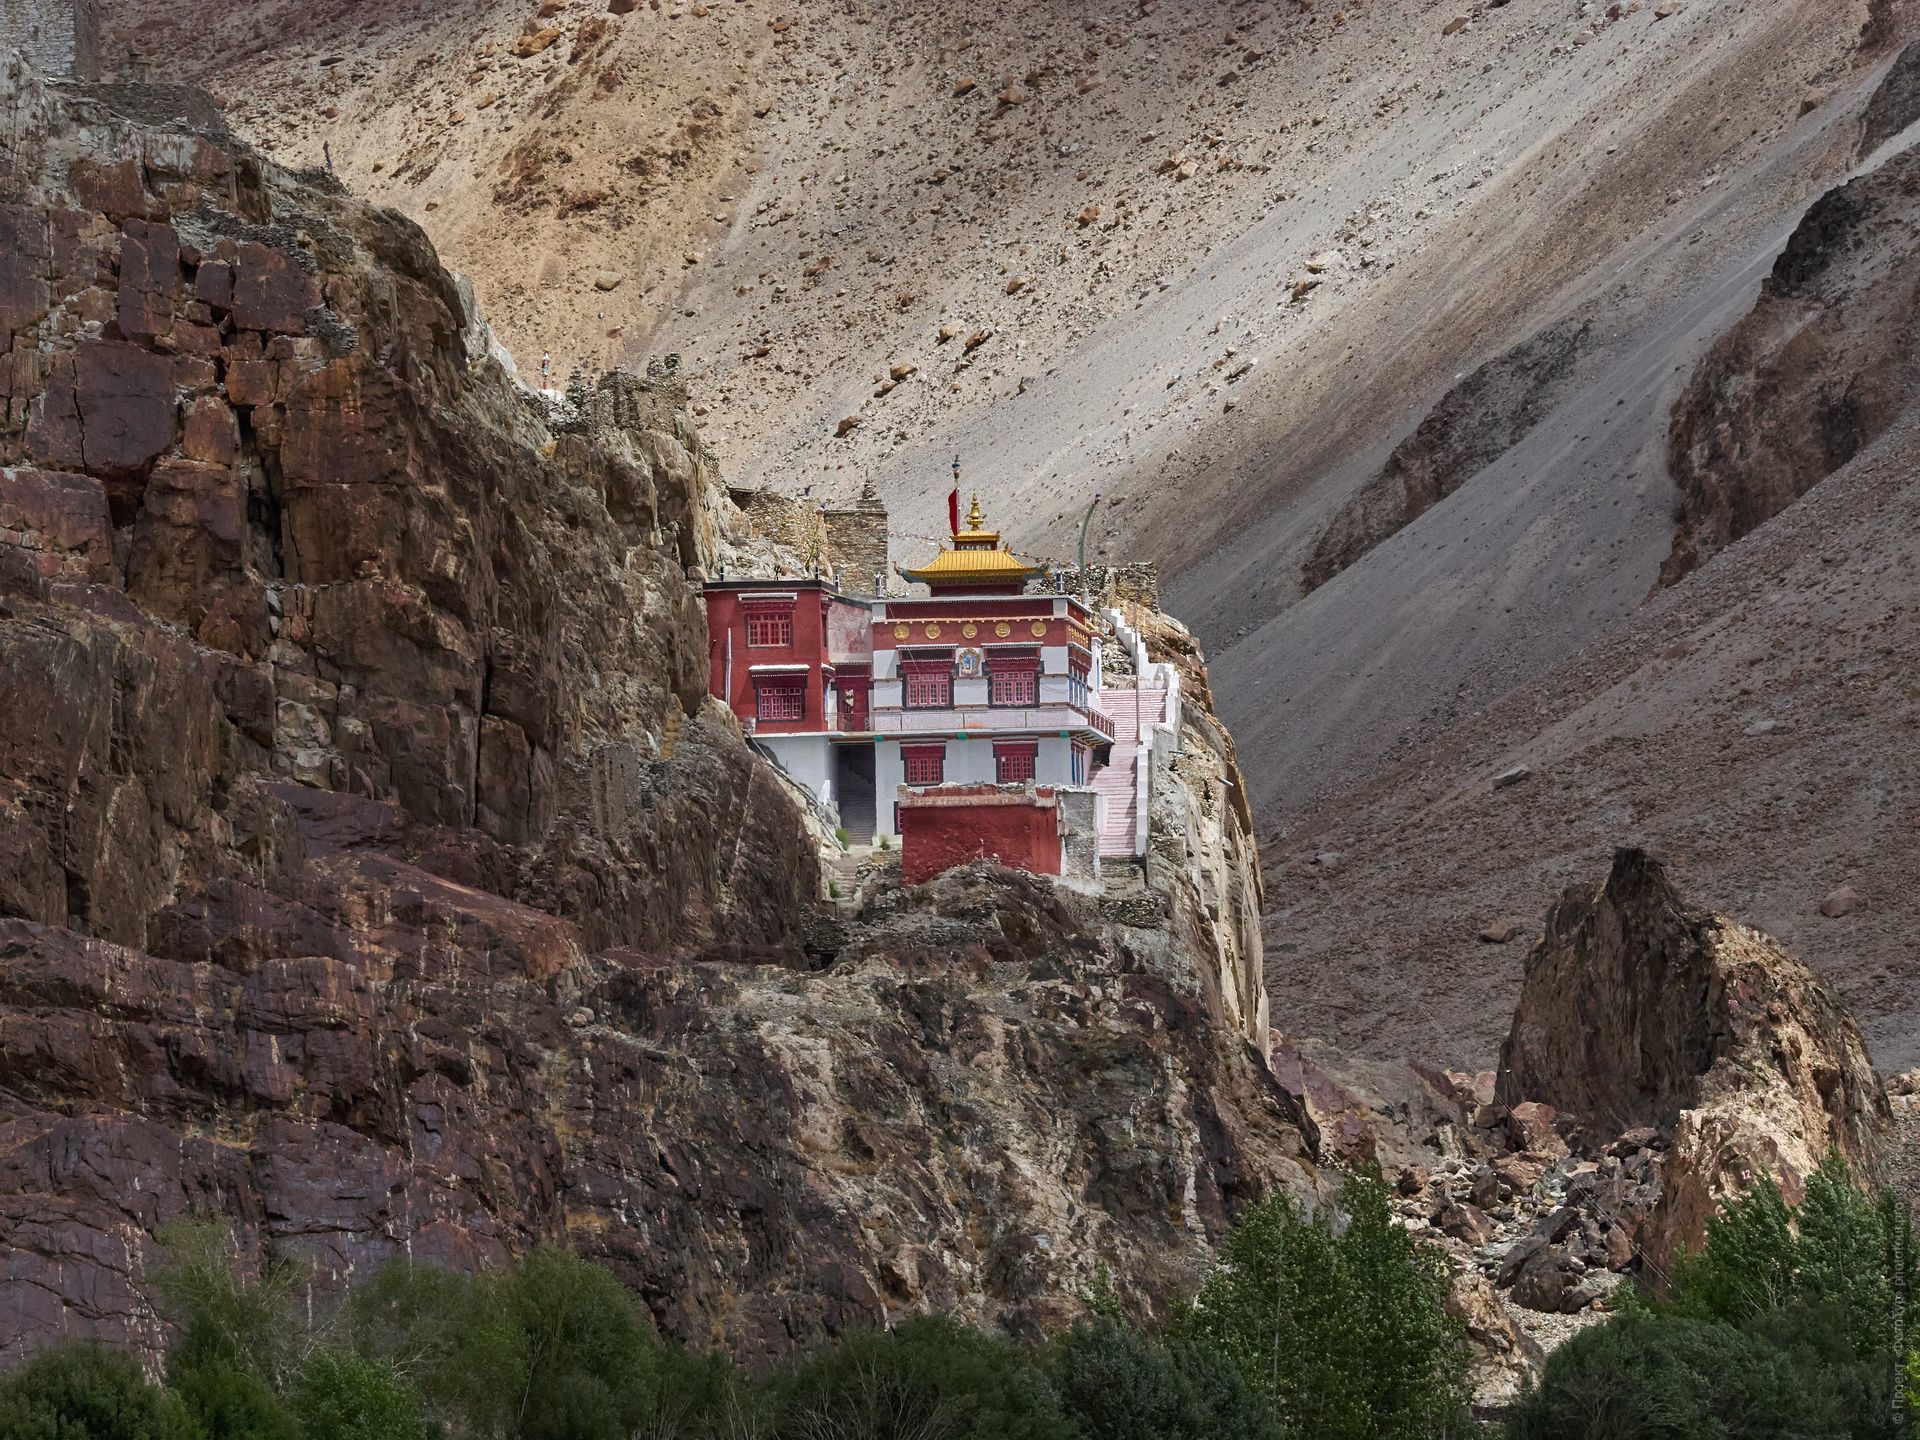 Monastery Tangtse. Expedition Tibet Lake-2: Pangong, Tso Moriri, Tso Kar, Tso Startsapak, Leh-Manali highway.